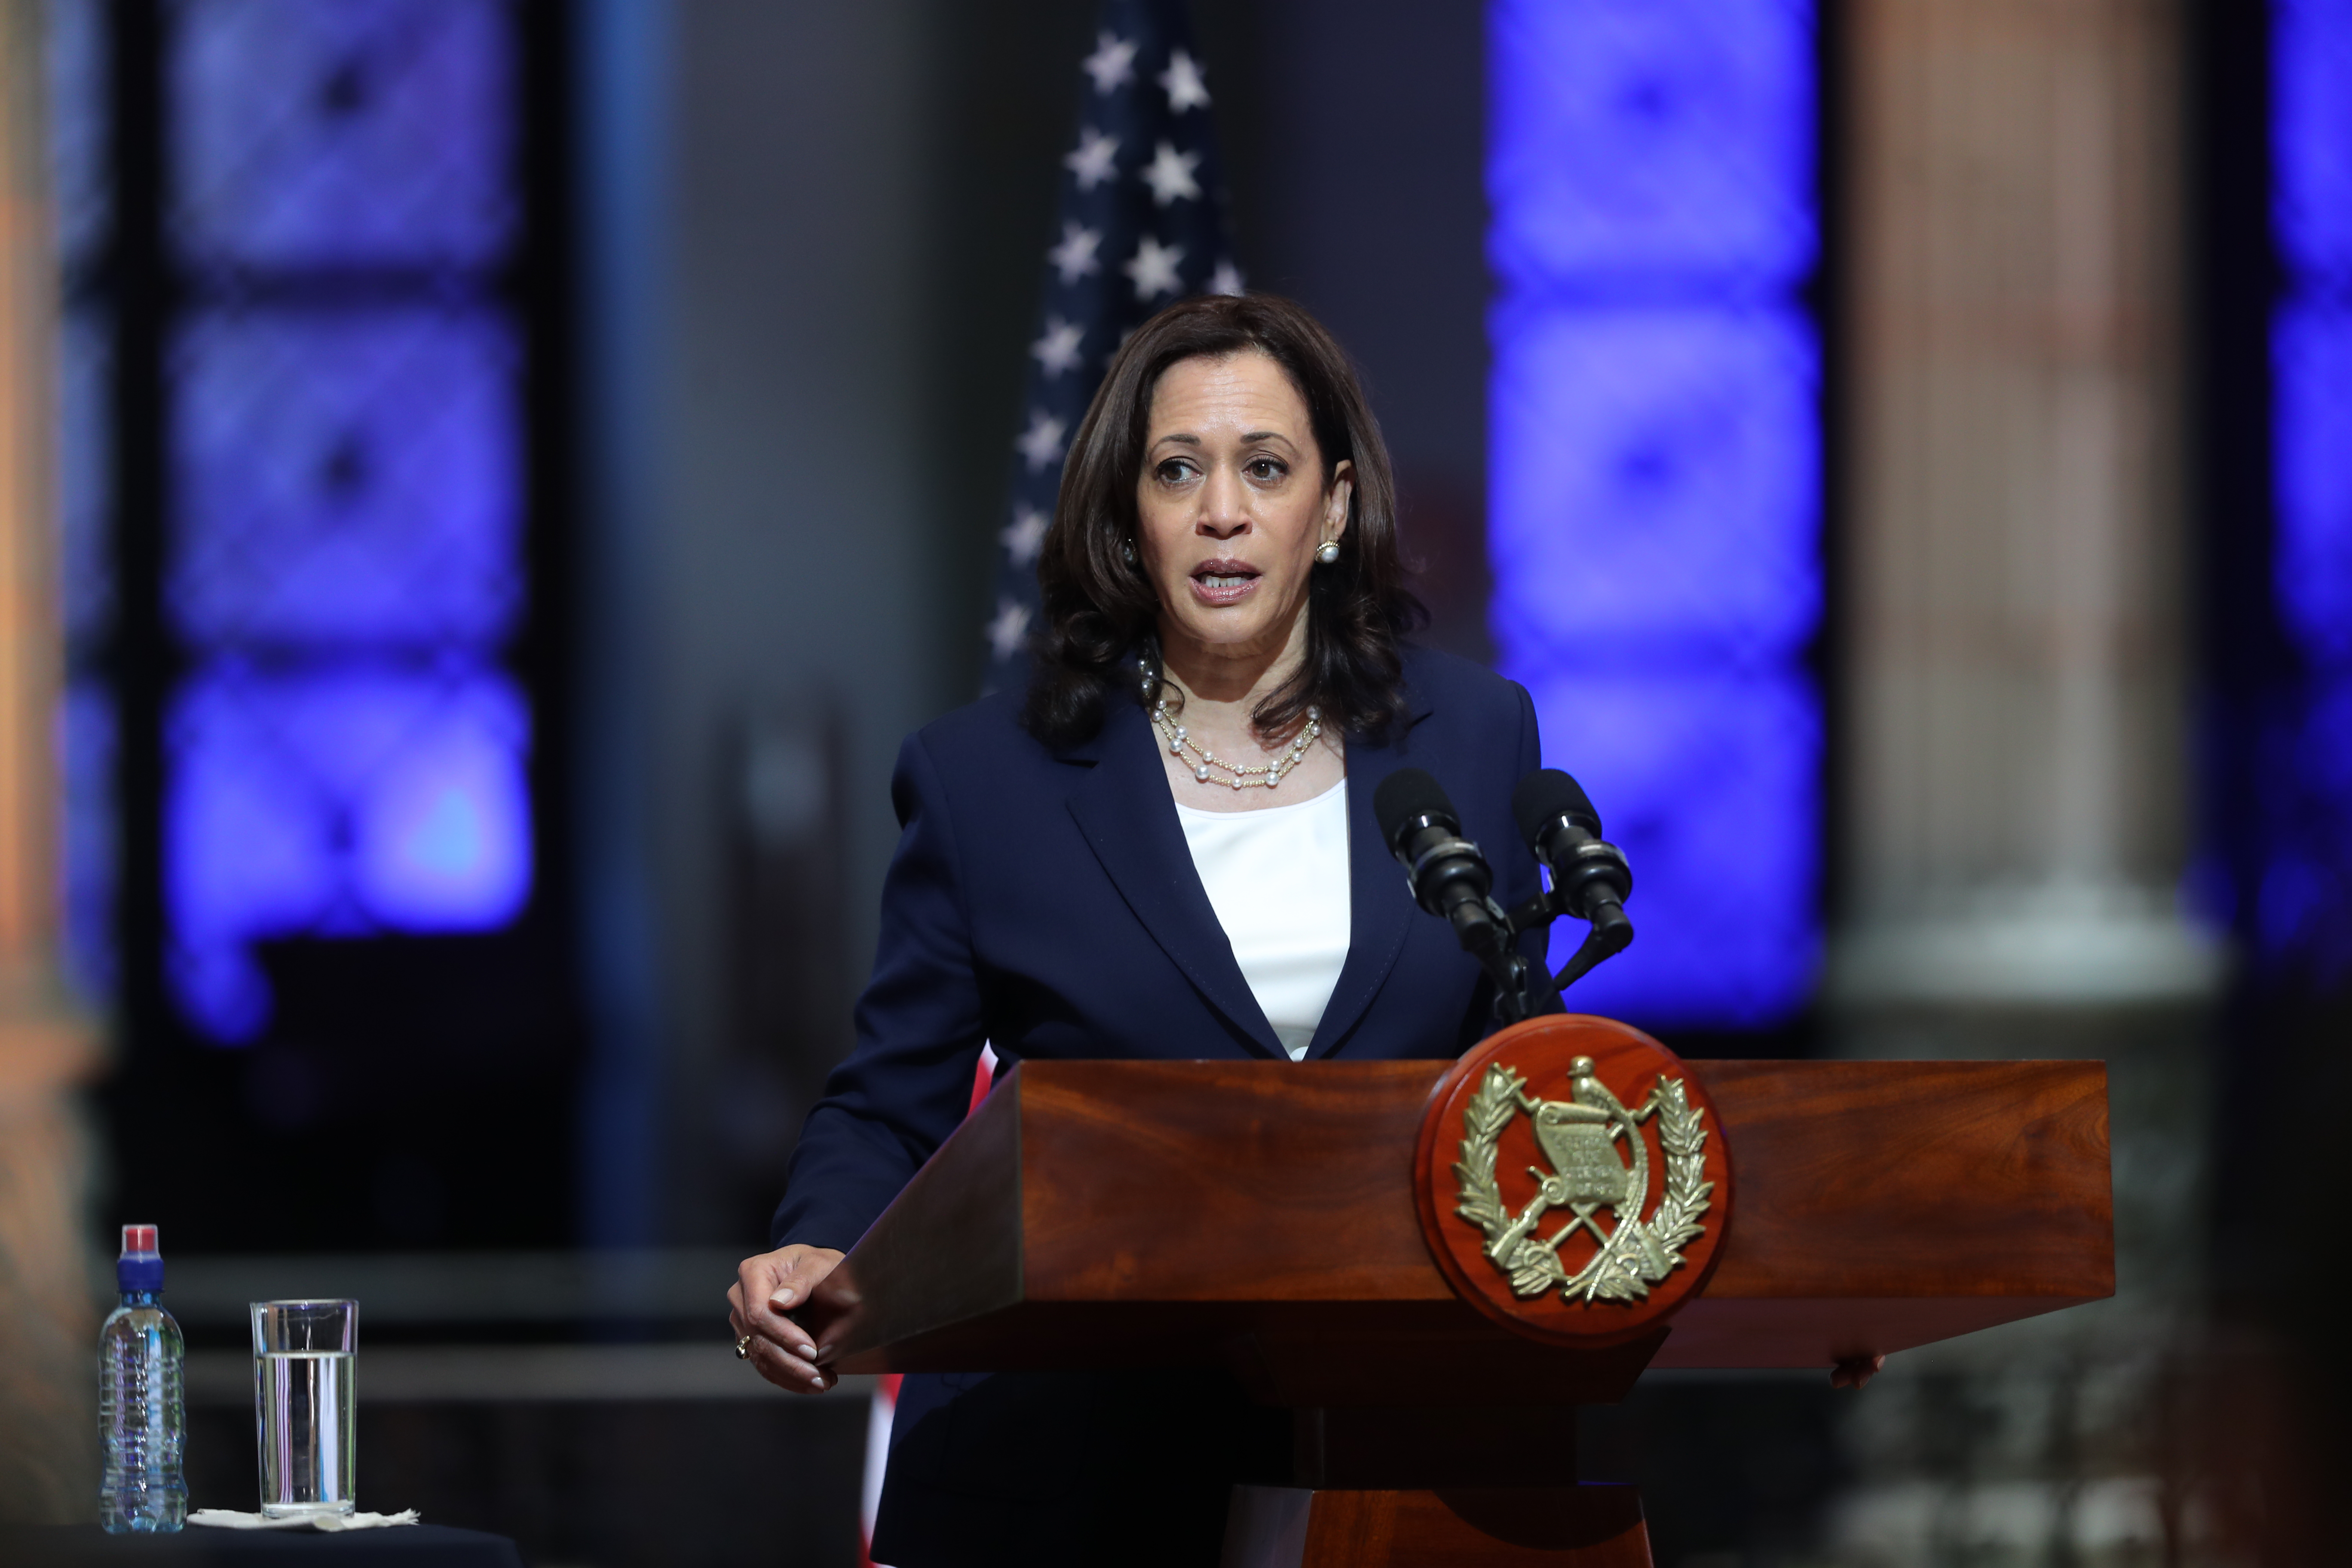 La vicepresidenta estadounidense anunció la creación de una entidad regional para combatir la corrupción en el país. (Foto Prensa Libre: Erick Avila)